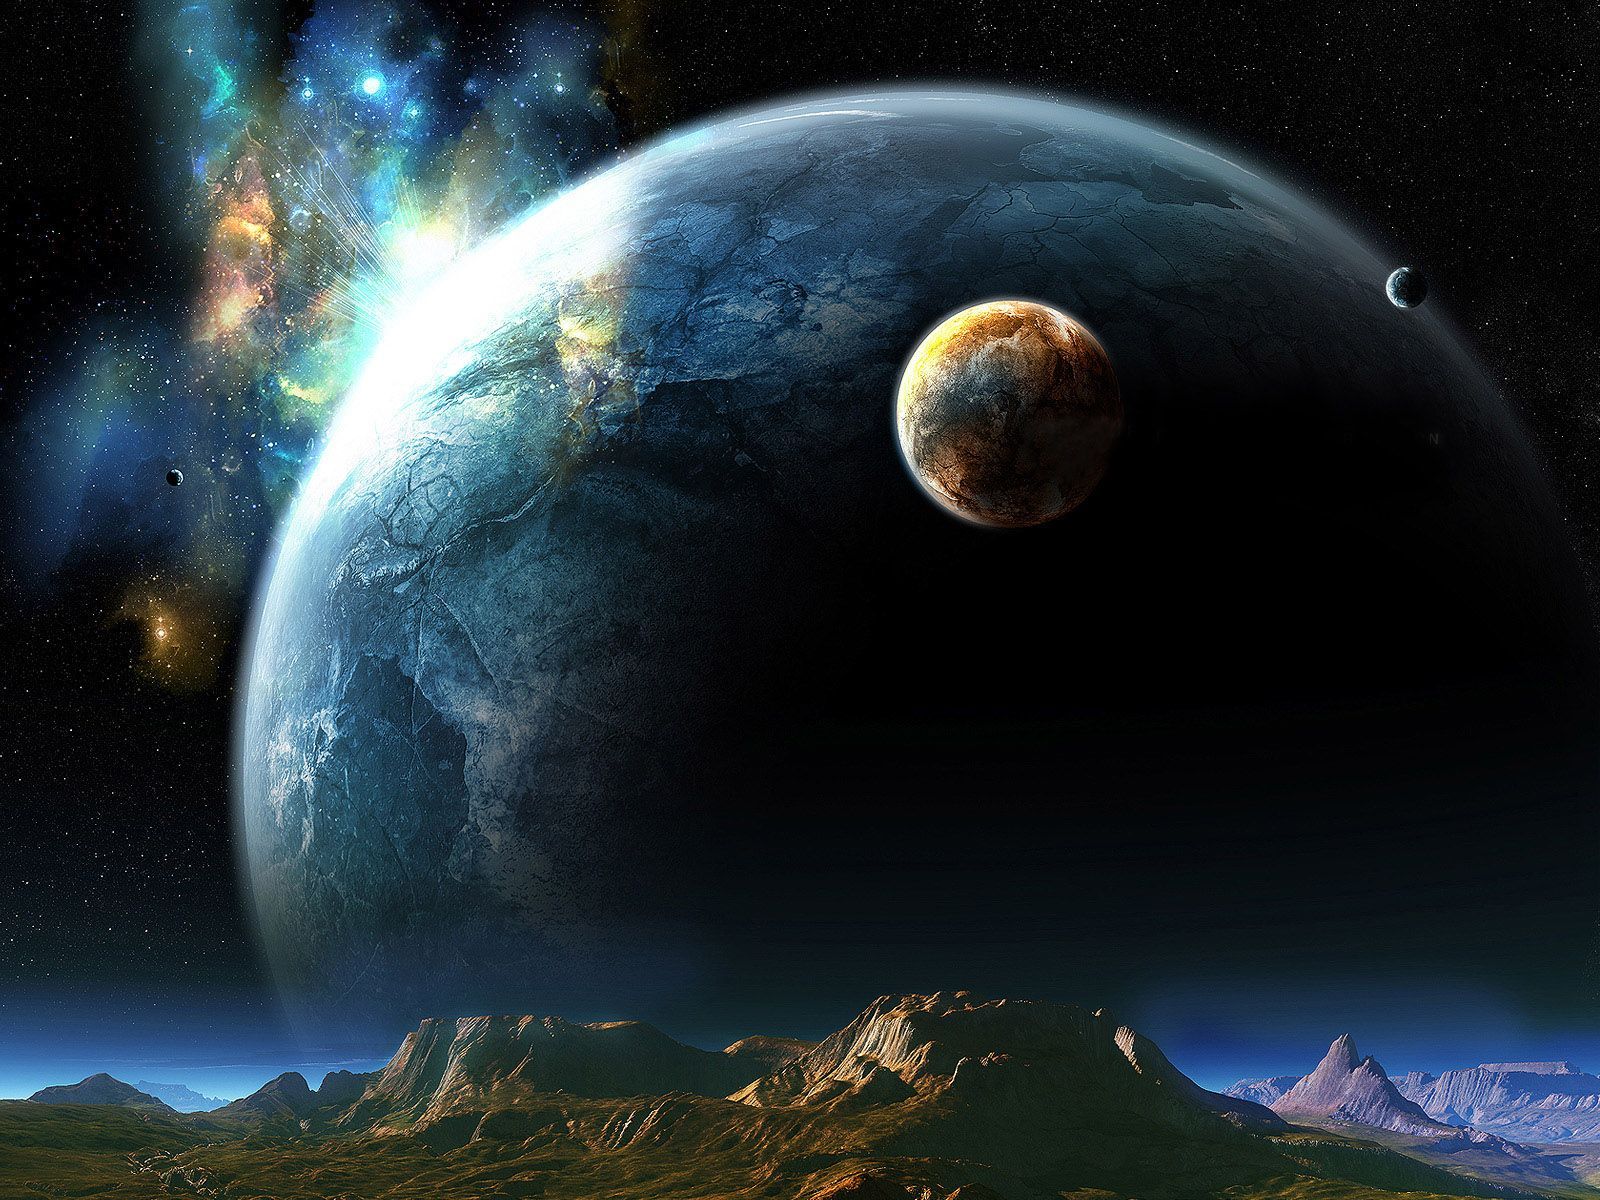 Free HD 1080p Desktop Wallpaper, Universe Wallpaper. Planet wallpaper, Universe wallpaper, Planets wallpaper